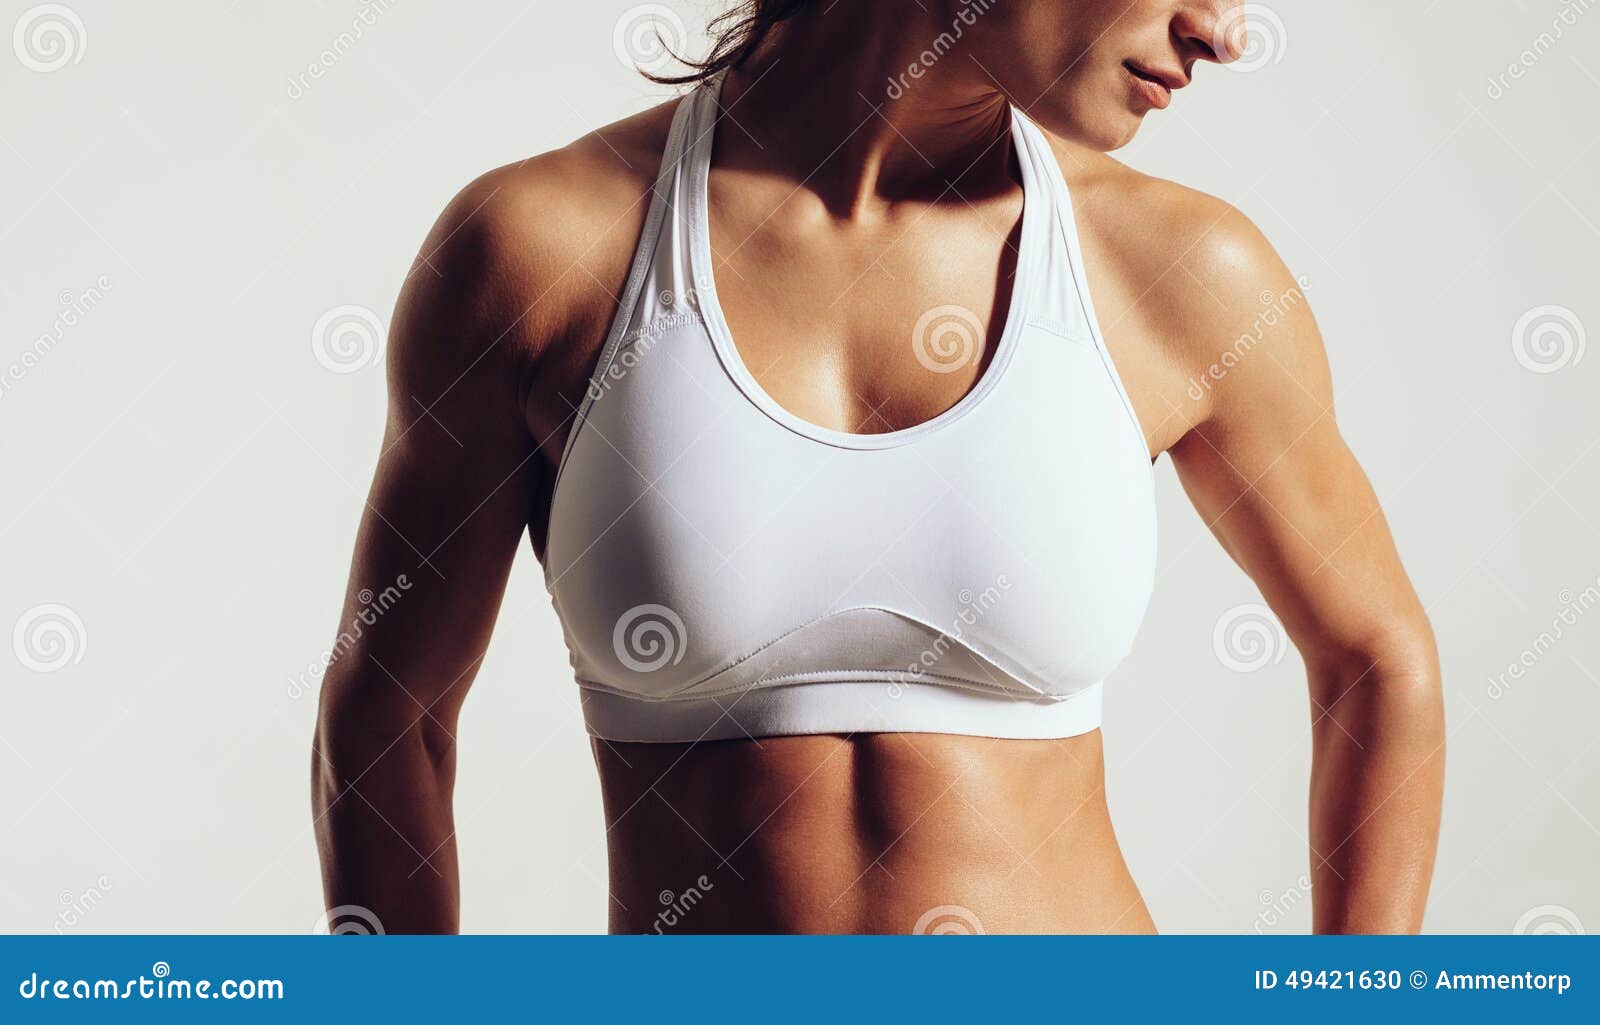 Portret dysponowana kobieta w sporta staniku z mięśniowym ciałem przeciw popielatemu tłu Zakończenia studia strzał żeński sprawność fizyczna model w sportach jest ubranym